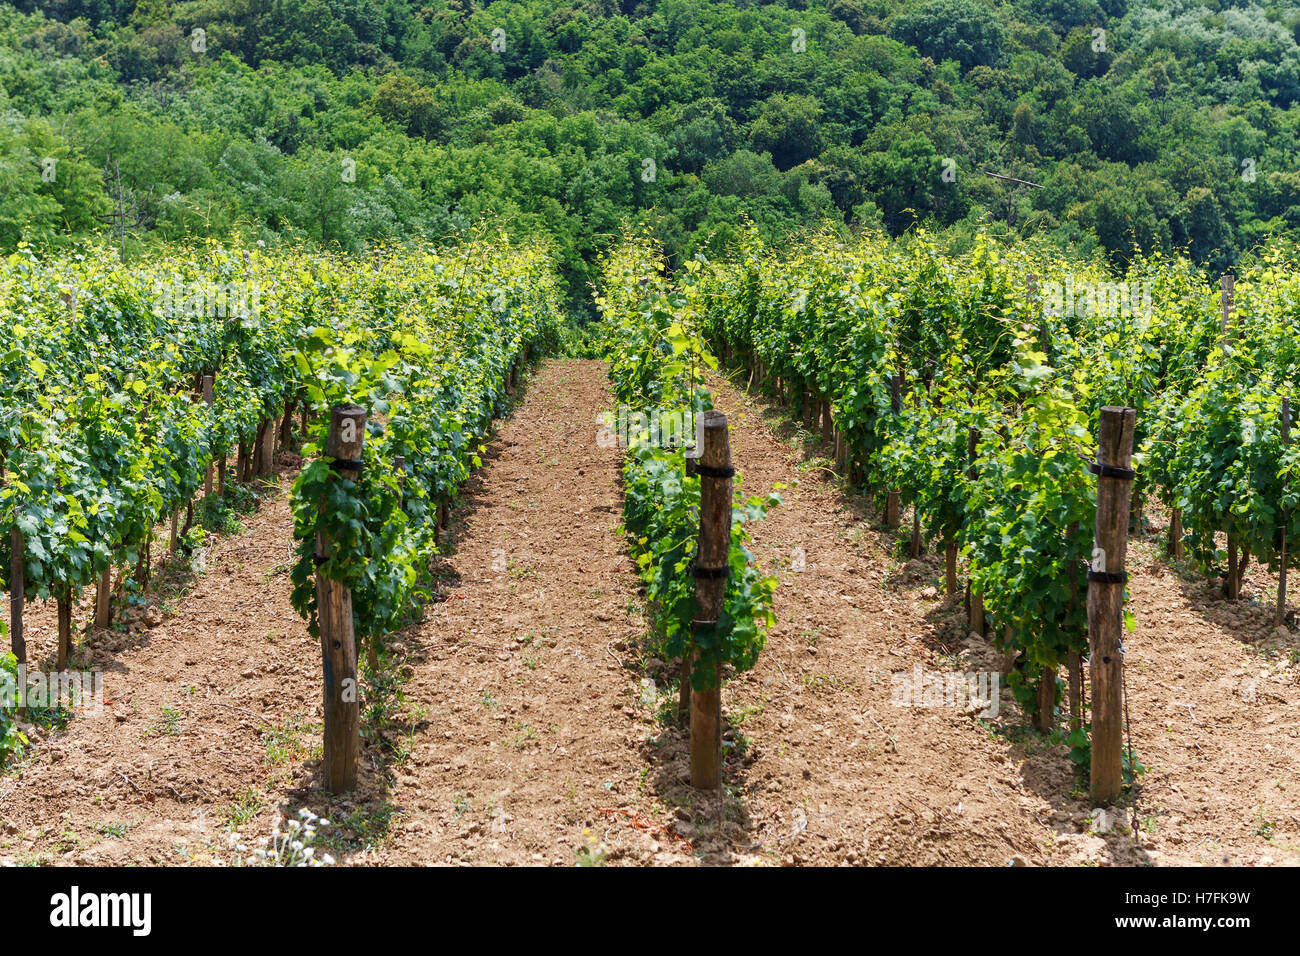 Vigne - viticulture vert, Tokaj, Hongrie, Europe Banque D'Images